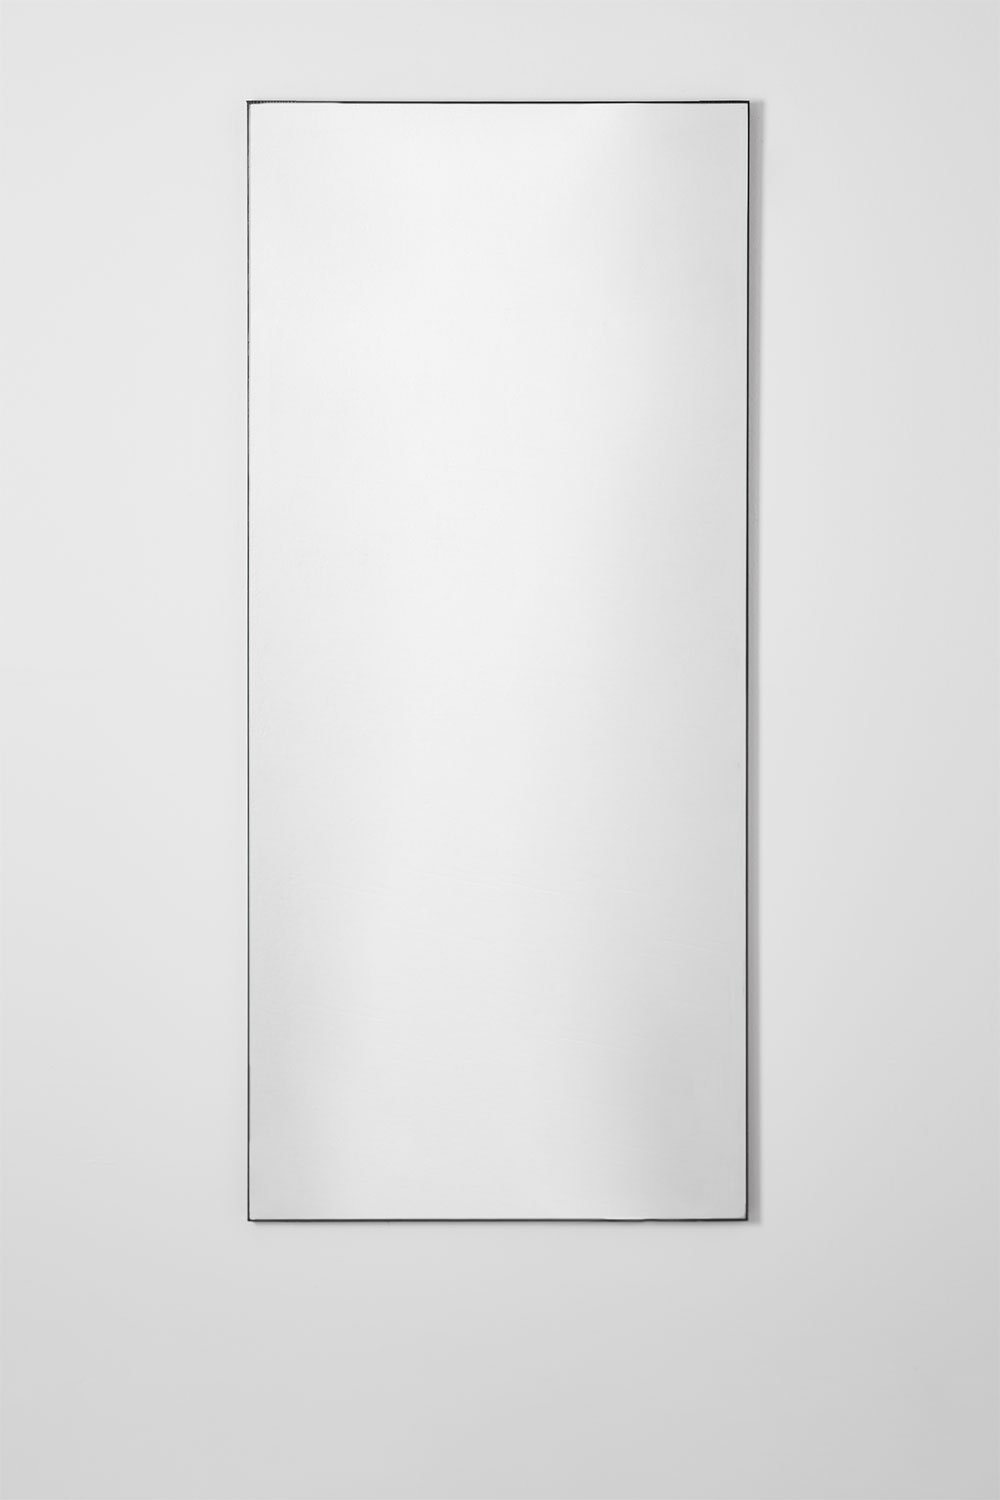 Specchio da parete rettangolare in MDF (60x140 cm) Vuaret, immagine della galleria 1